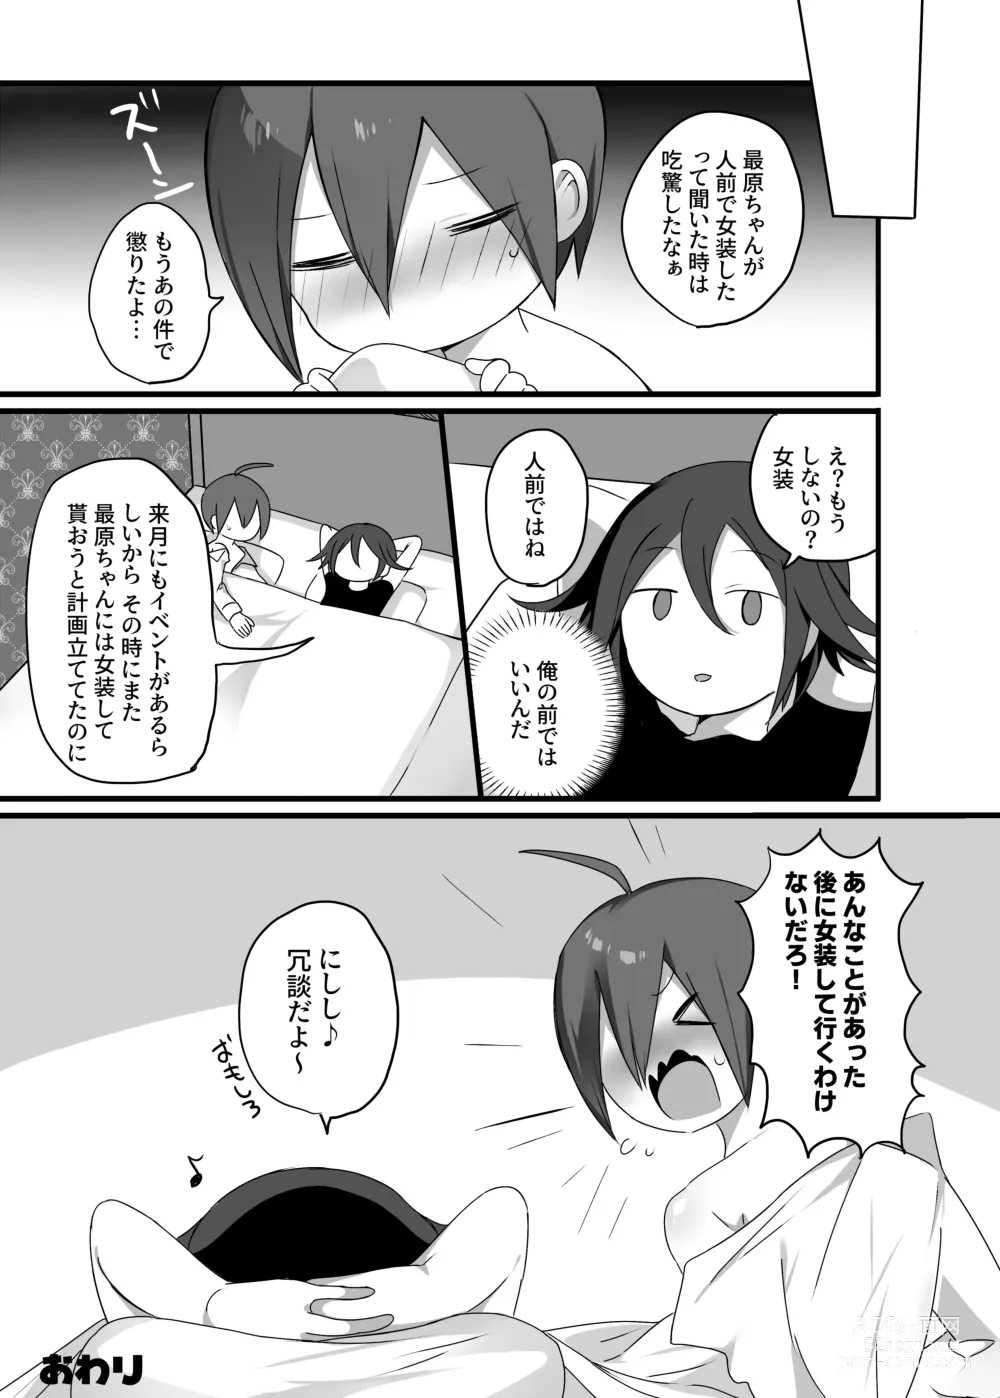 Page 41 of doujinshi OuSai Manga